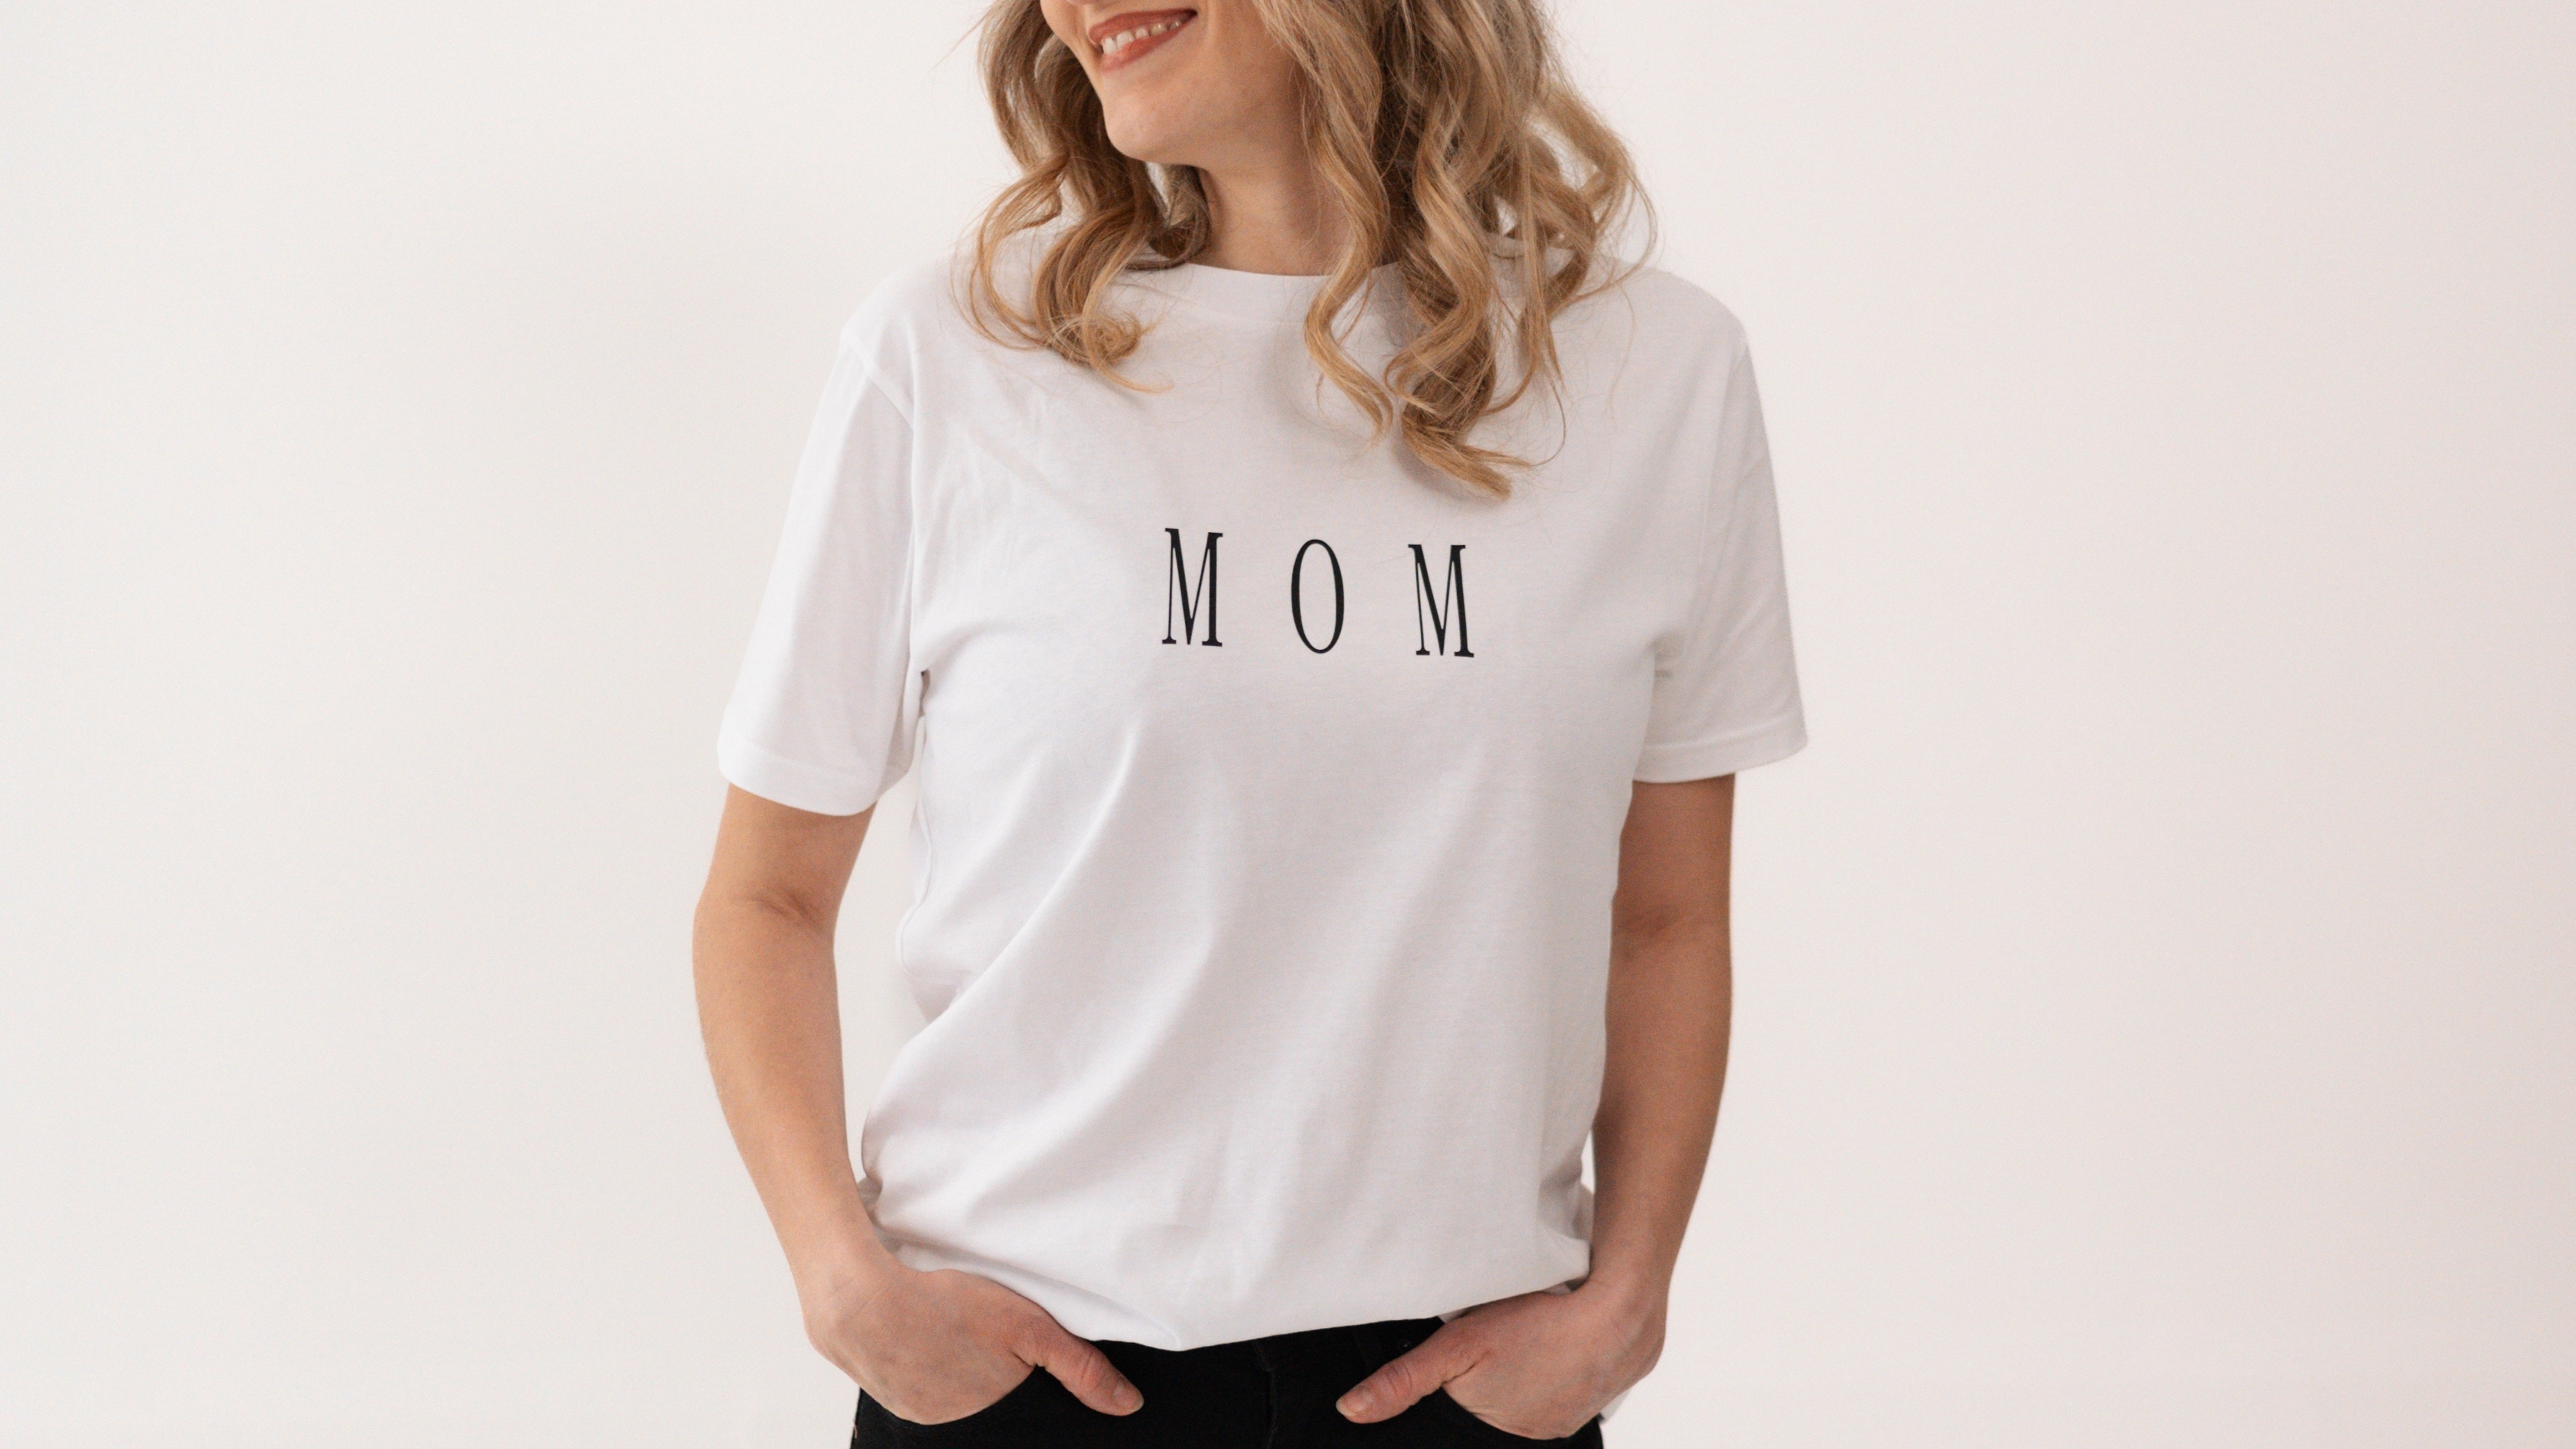 MOM Shirt, T-Shirt